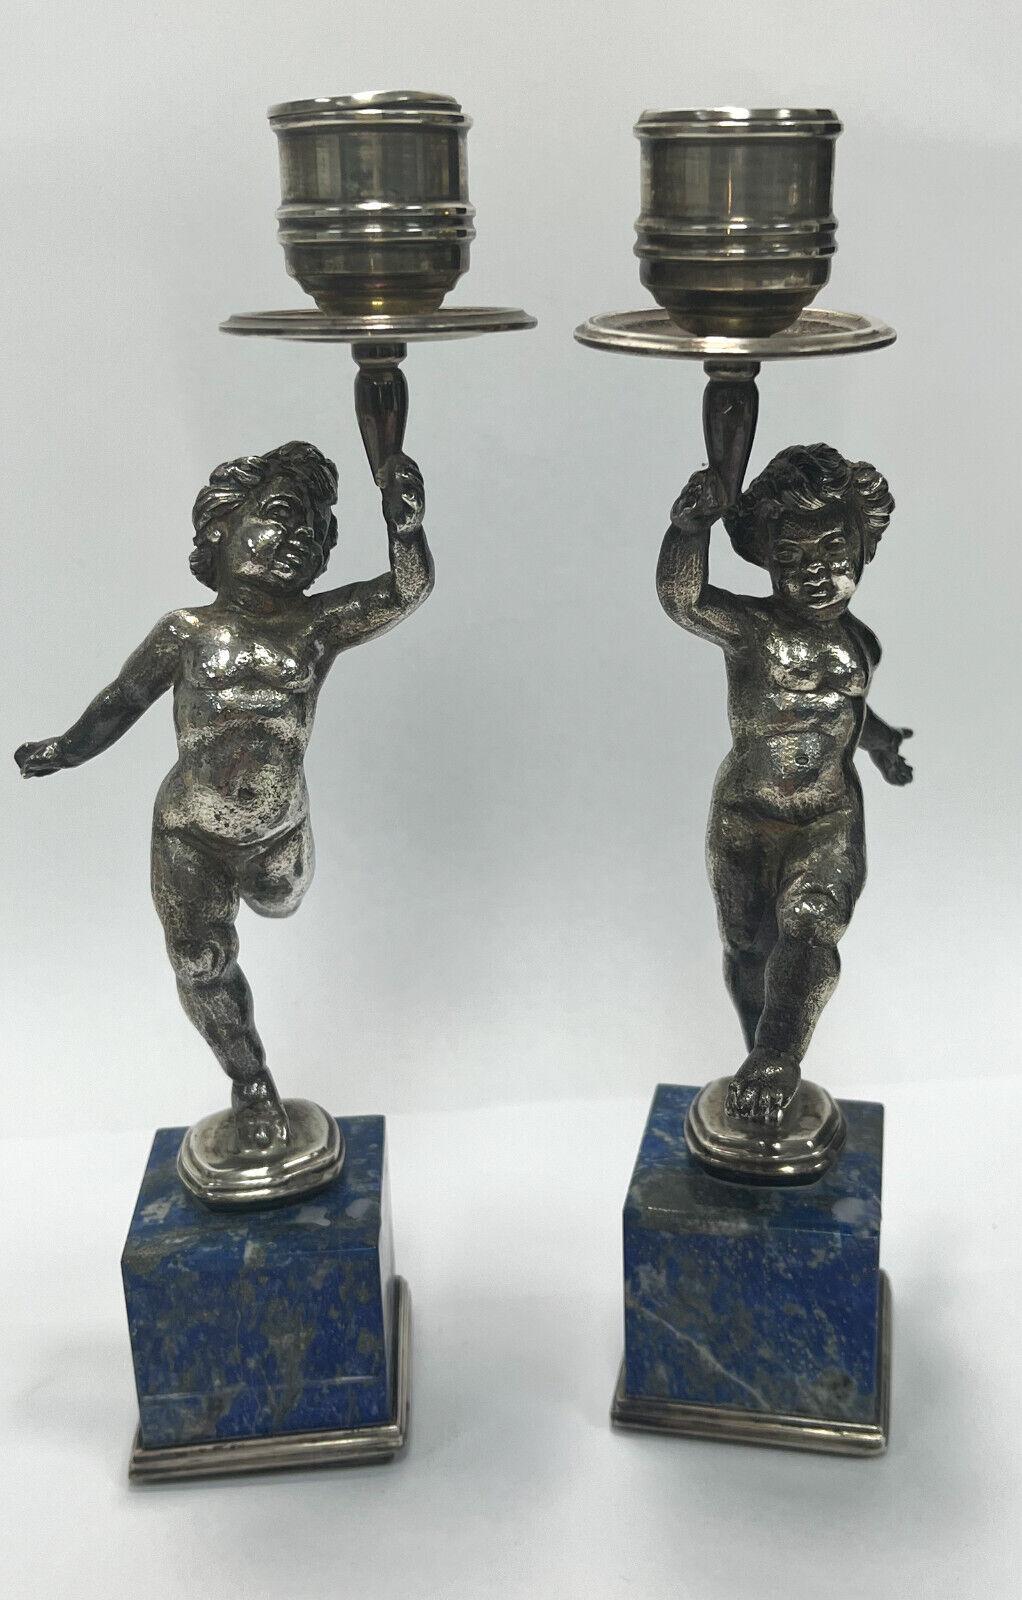 Paire de chandeliers italiens Buccellati en argent sterling et placage de lapis-lazuli, vers 1950. Des chérubins figuratifs sur la tige soutiennent les bouquets en dansant. Panneaux de Lapis Lazuli vénérés sur les bases. Marques Buccellati en argent